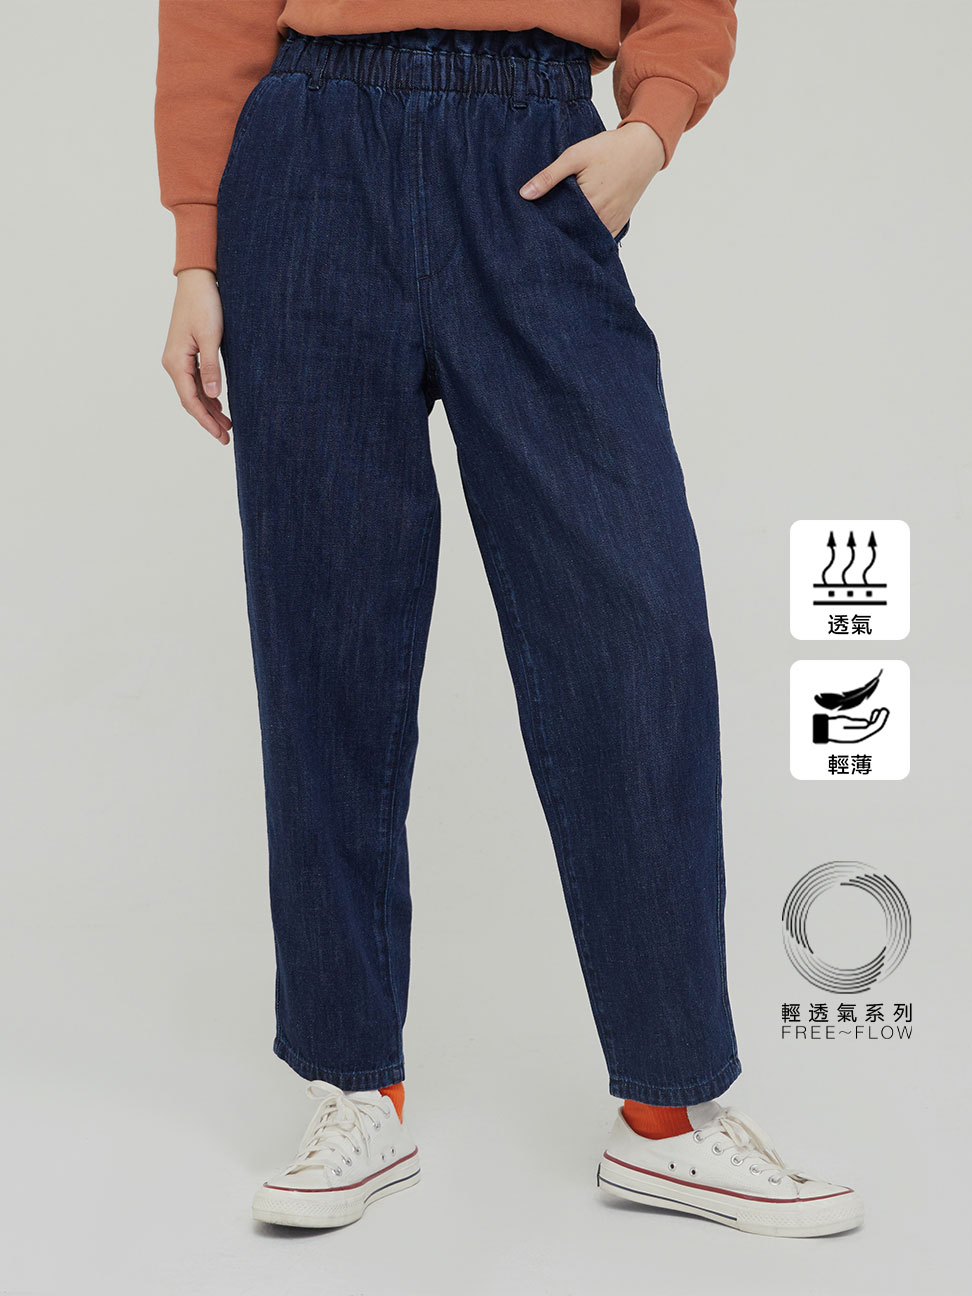 女裝|棉麻混紡高腰版型牛仔褲 輕透氣系列-深藍色